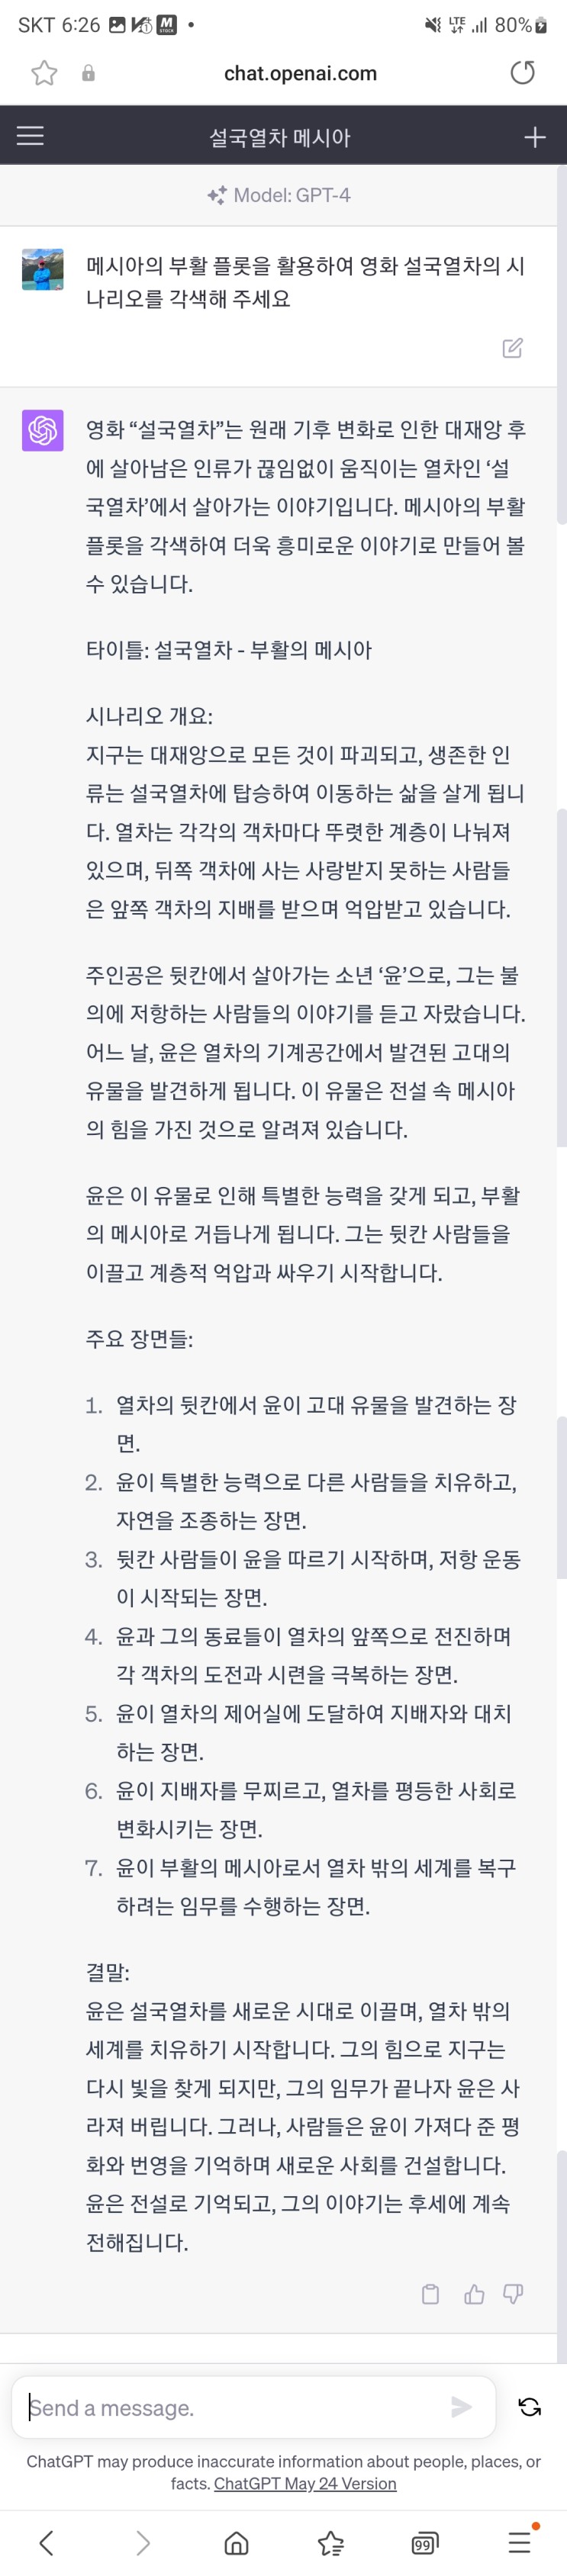 메시아의 부활 플롯으로 설국열차 시나리오 재구성 (feat 챗GPT)